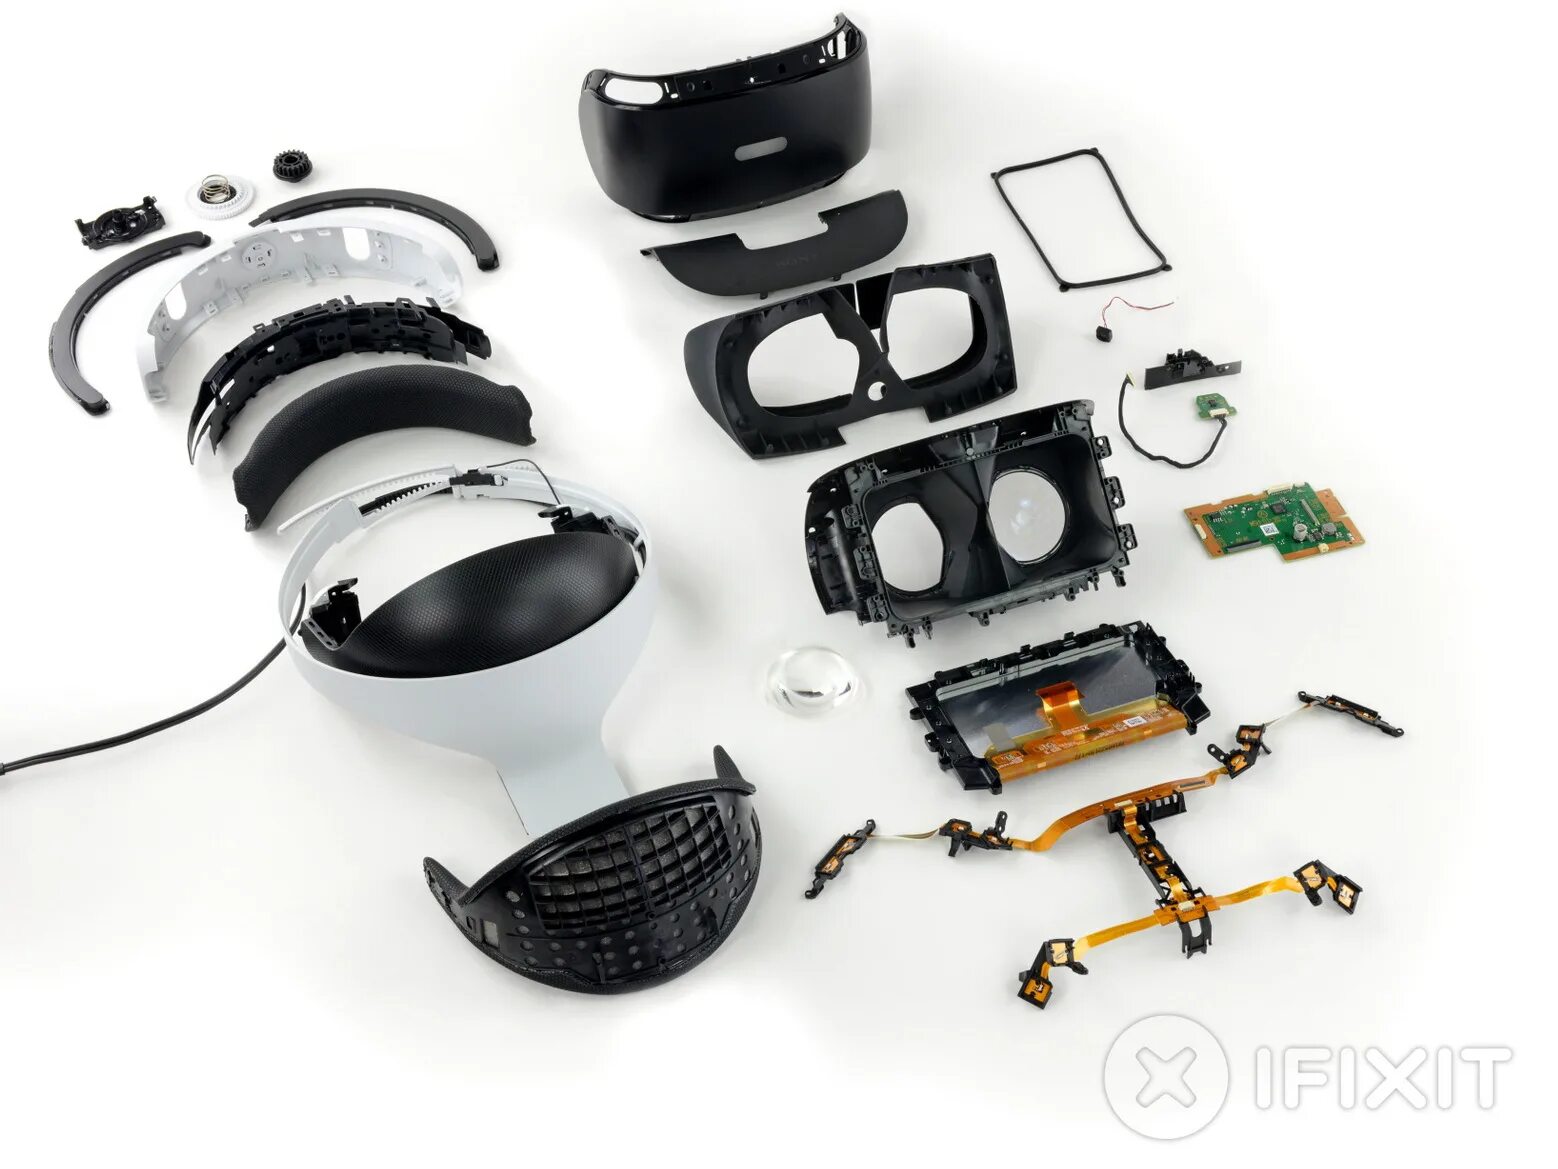 Sp vr. Сони плейстейшен vr2. Шлем Sony PLAYSTATION VR. Шлем виртуальной реальности VR 2 Sony. Комплектующие PS VR 1.